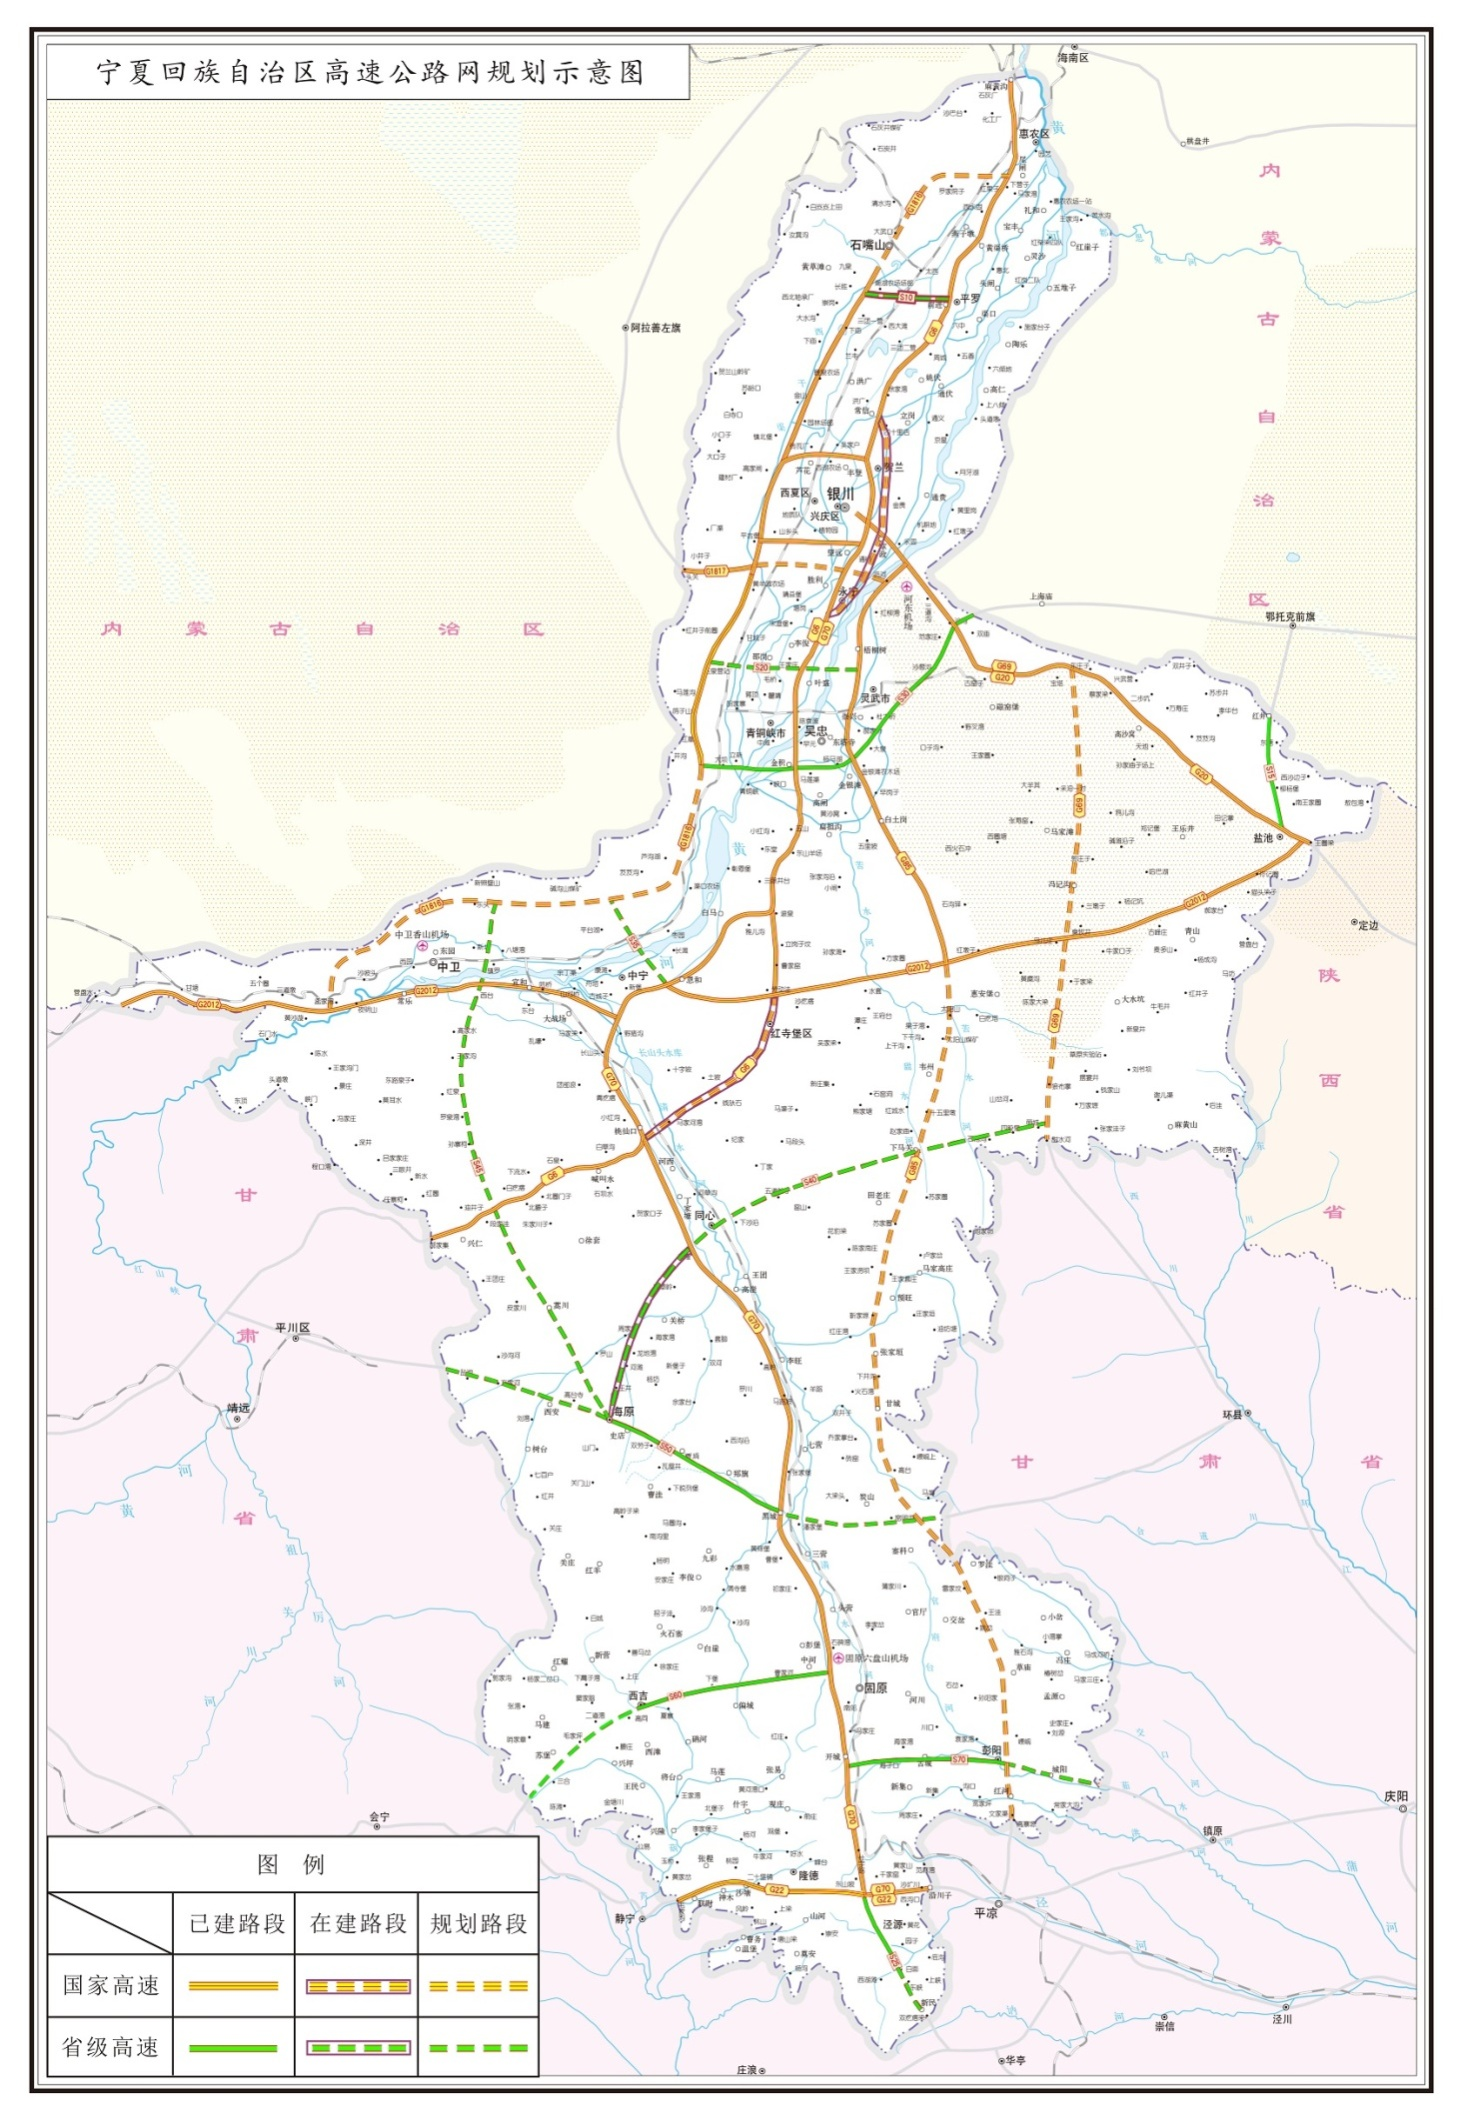 宁夏高速公路规划图  4.宁夏铁路规划图  5.宁夏物流空间布局图  6.图片